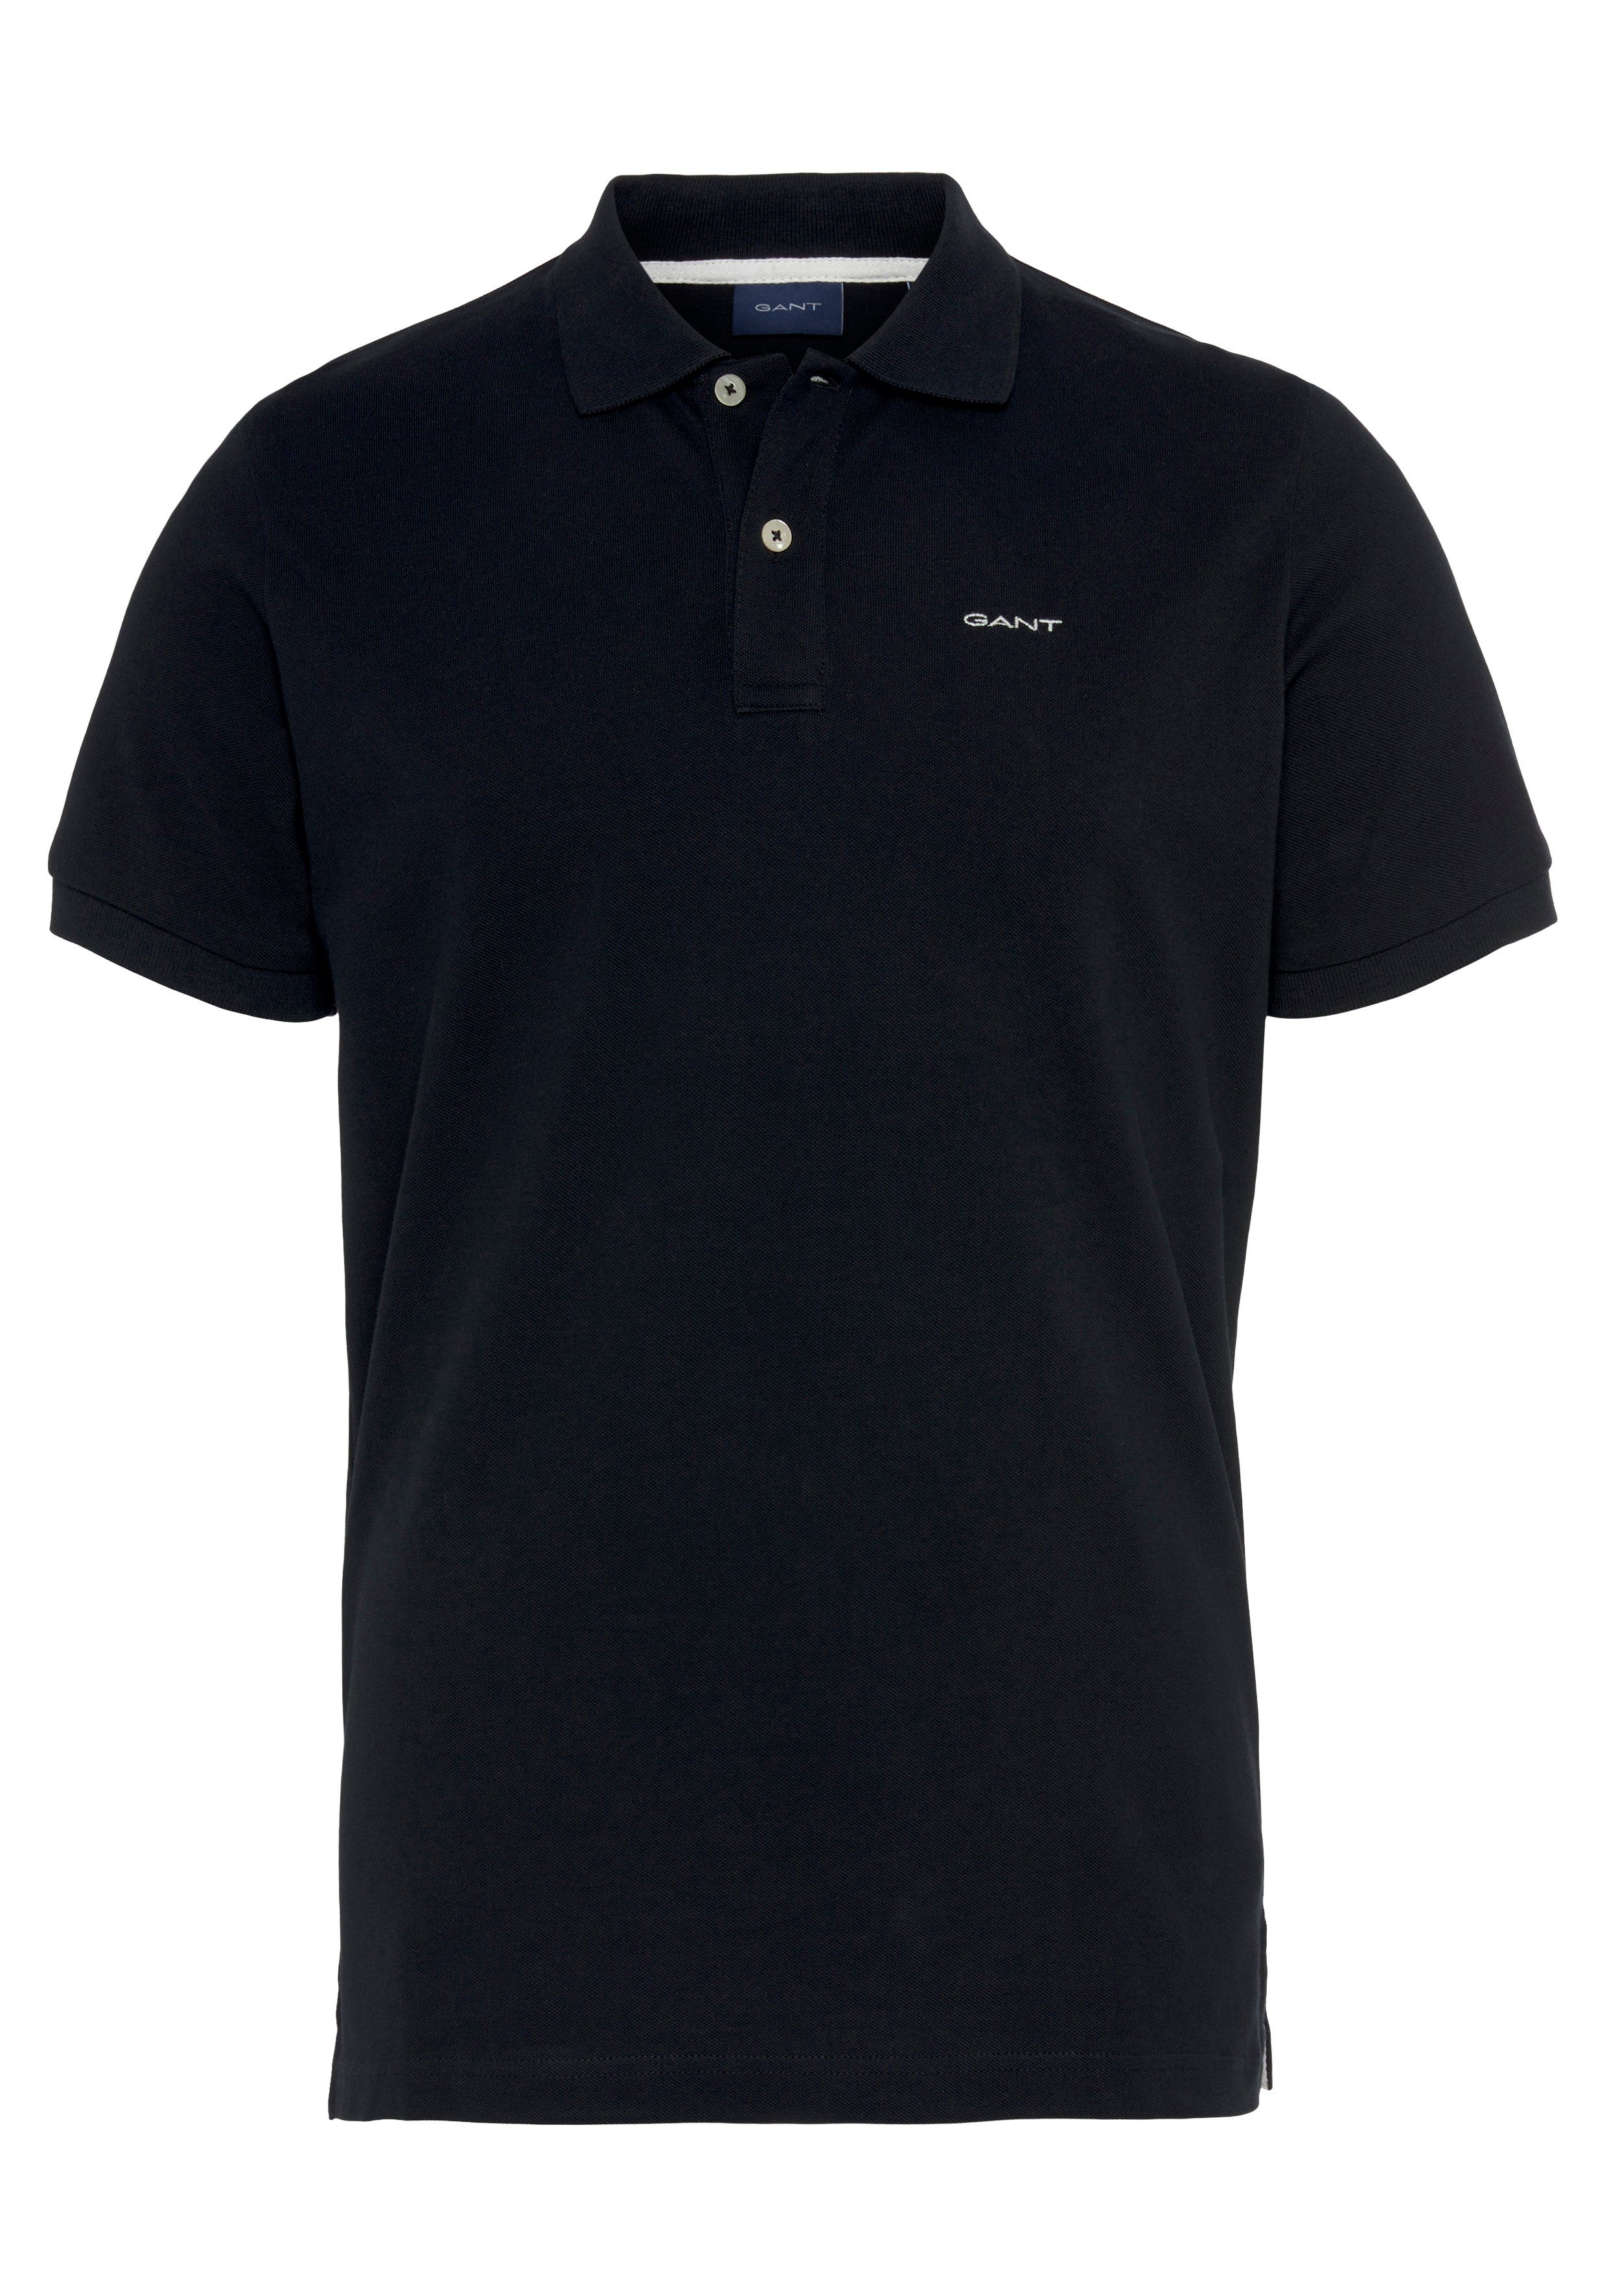 Casual, Qualität RUGGER Poloshirt Premium Fit, PIQUE KA Gant schwarz Shirt, Smart Regular MD. Piqué-Polo